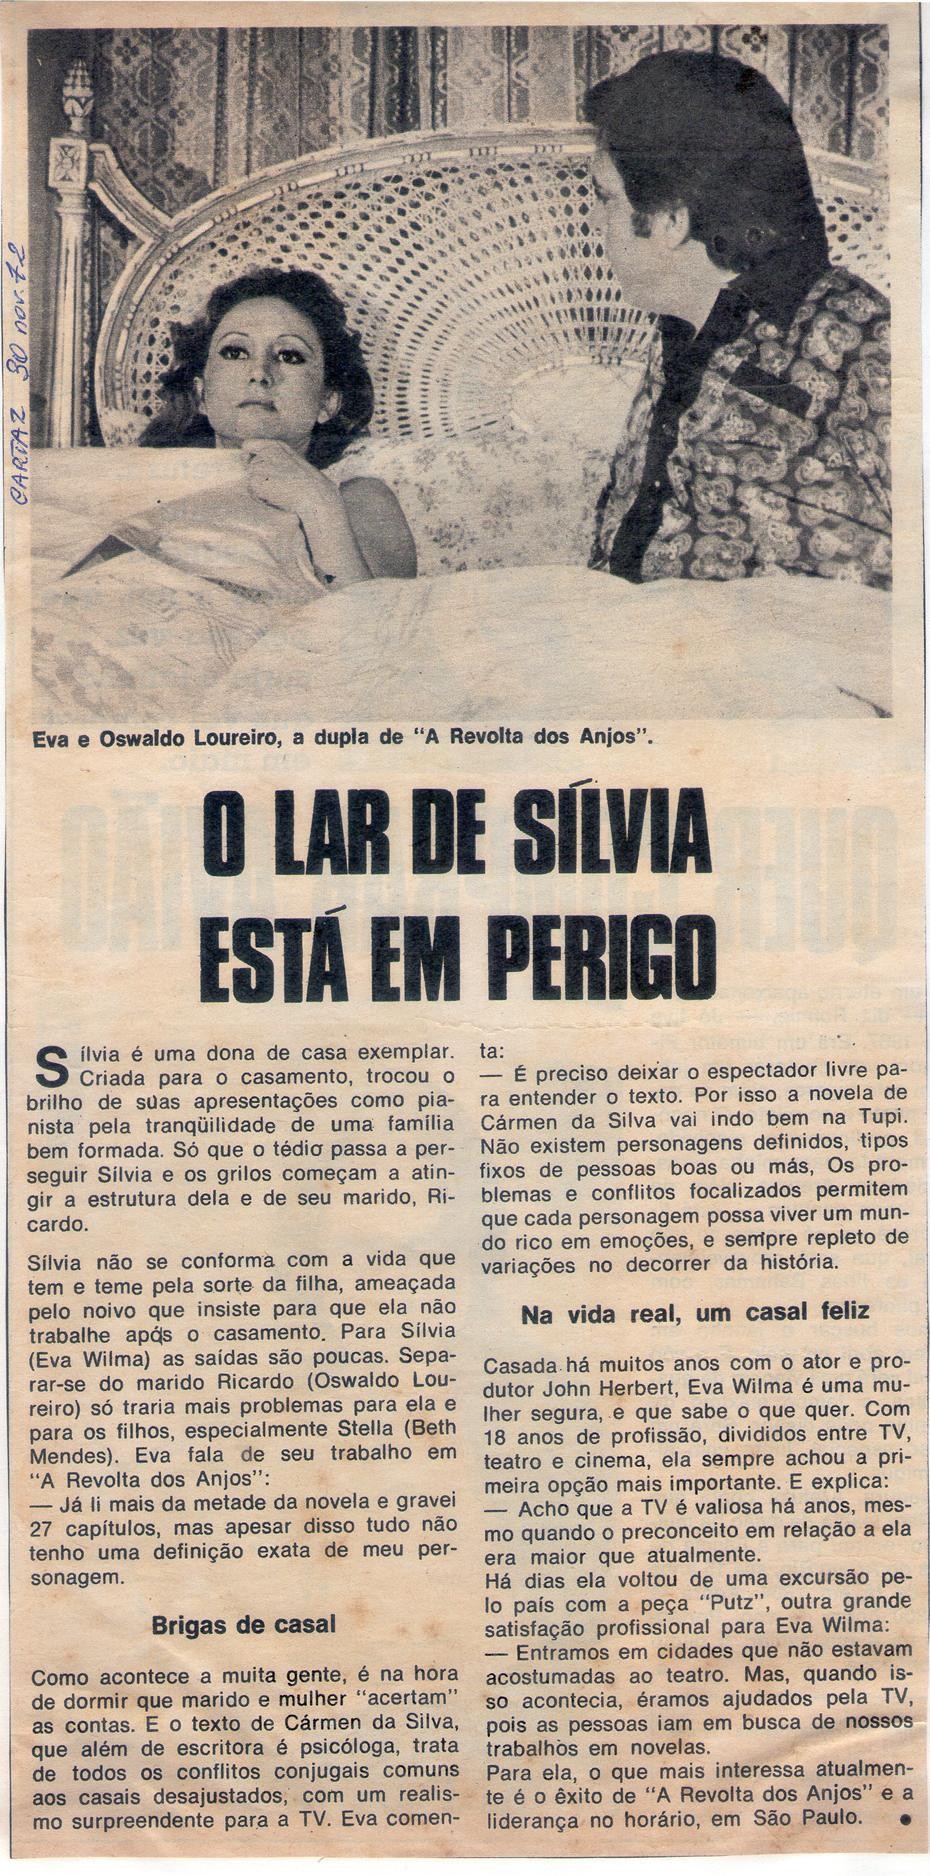 30 de Novembro de 1972 - Cartaz. O lar de Sílvia está em perigo.